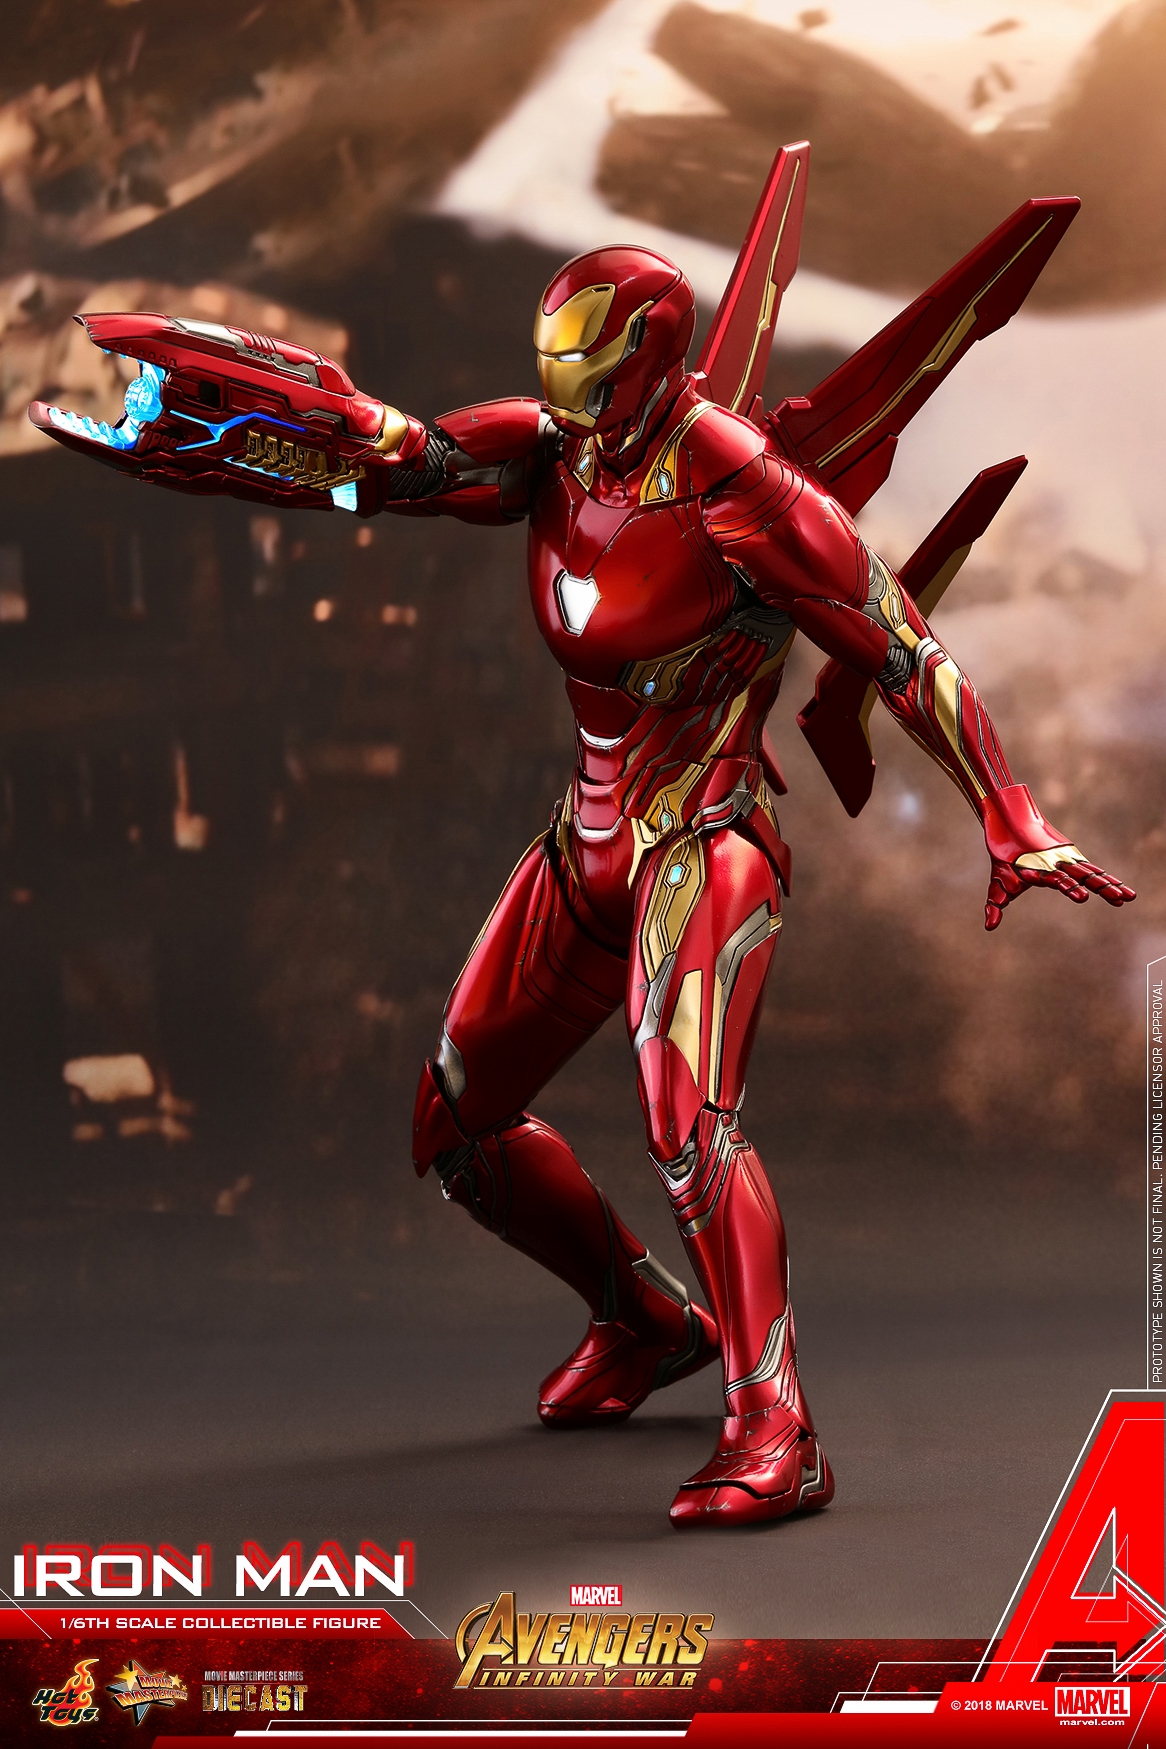 Hot-Toys-MMS473D23-Avengers-Infinity-War-Iron-Man-Collectible-Figure-006.jpg